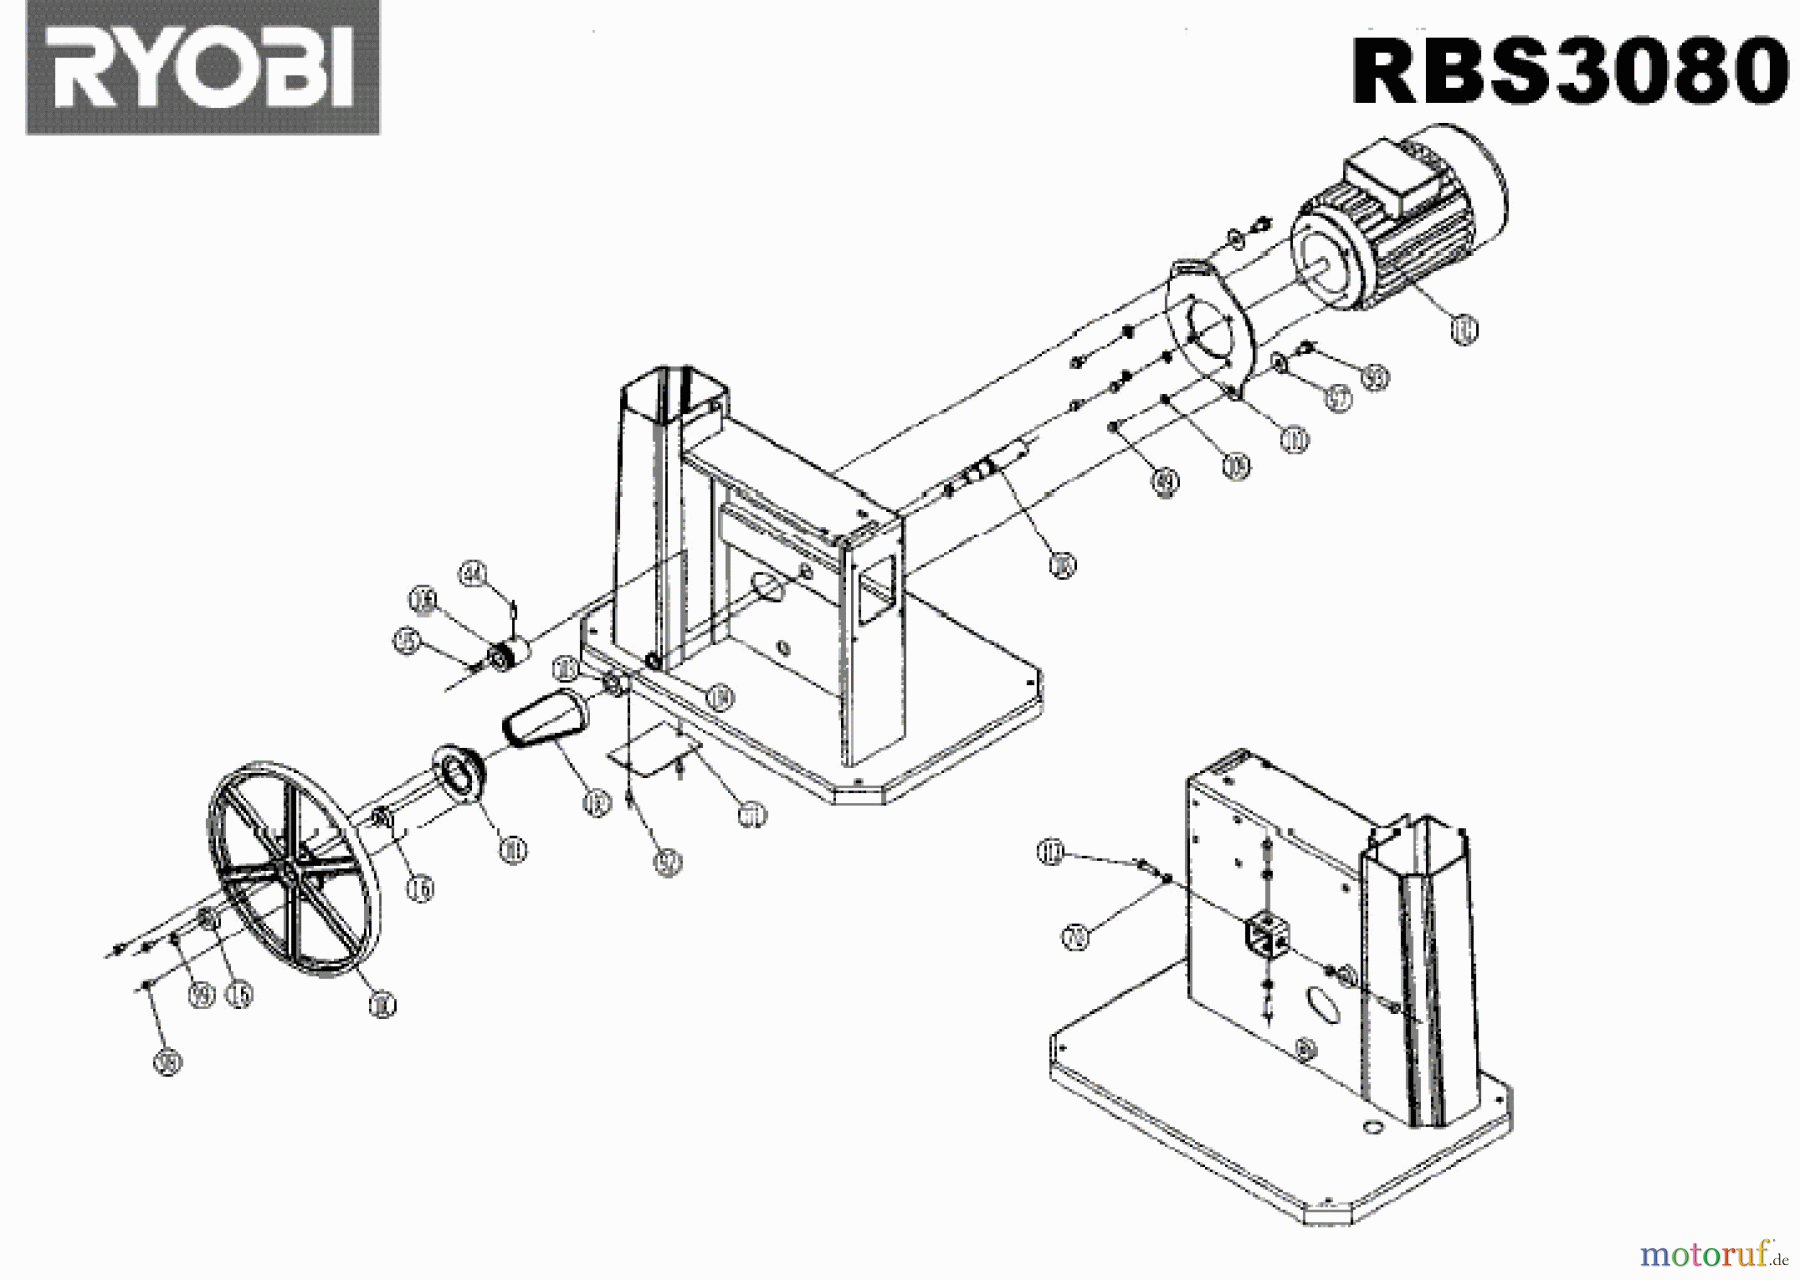  Ryobi Sägen Bandsägen RBS3080 Seite 2